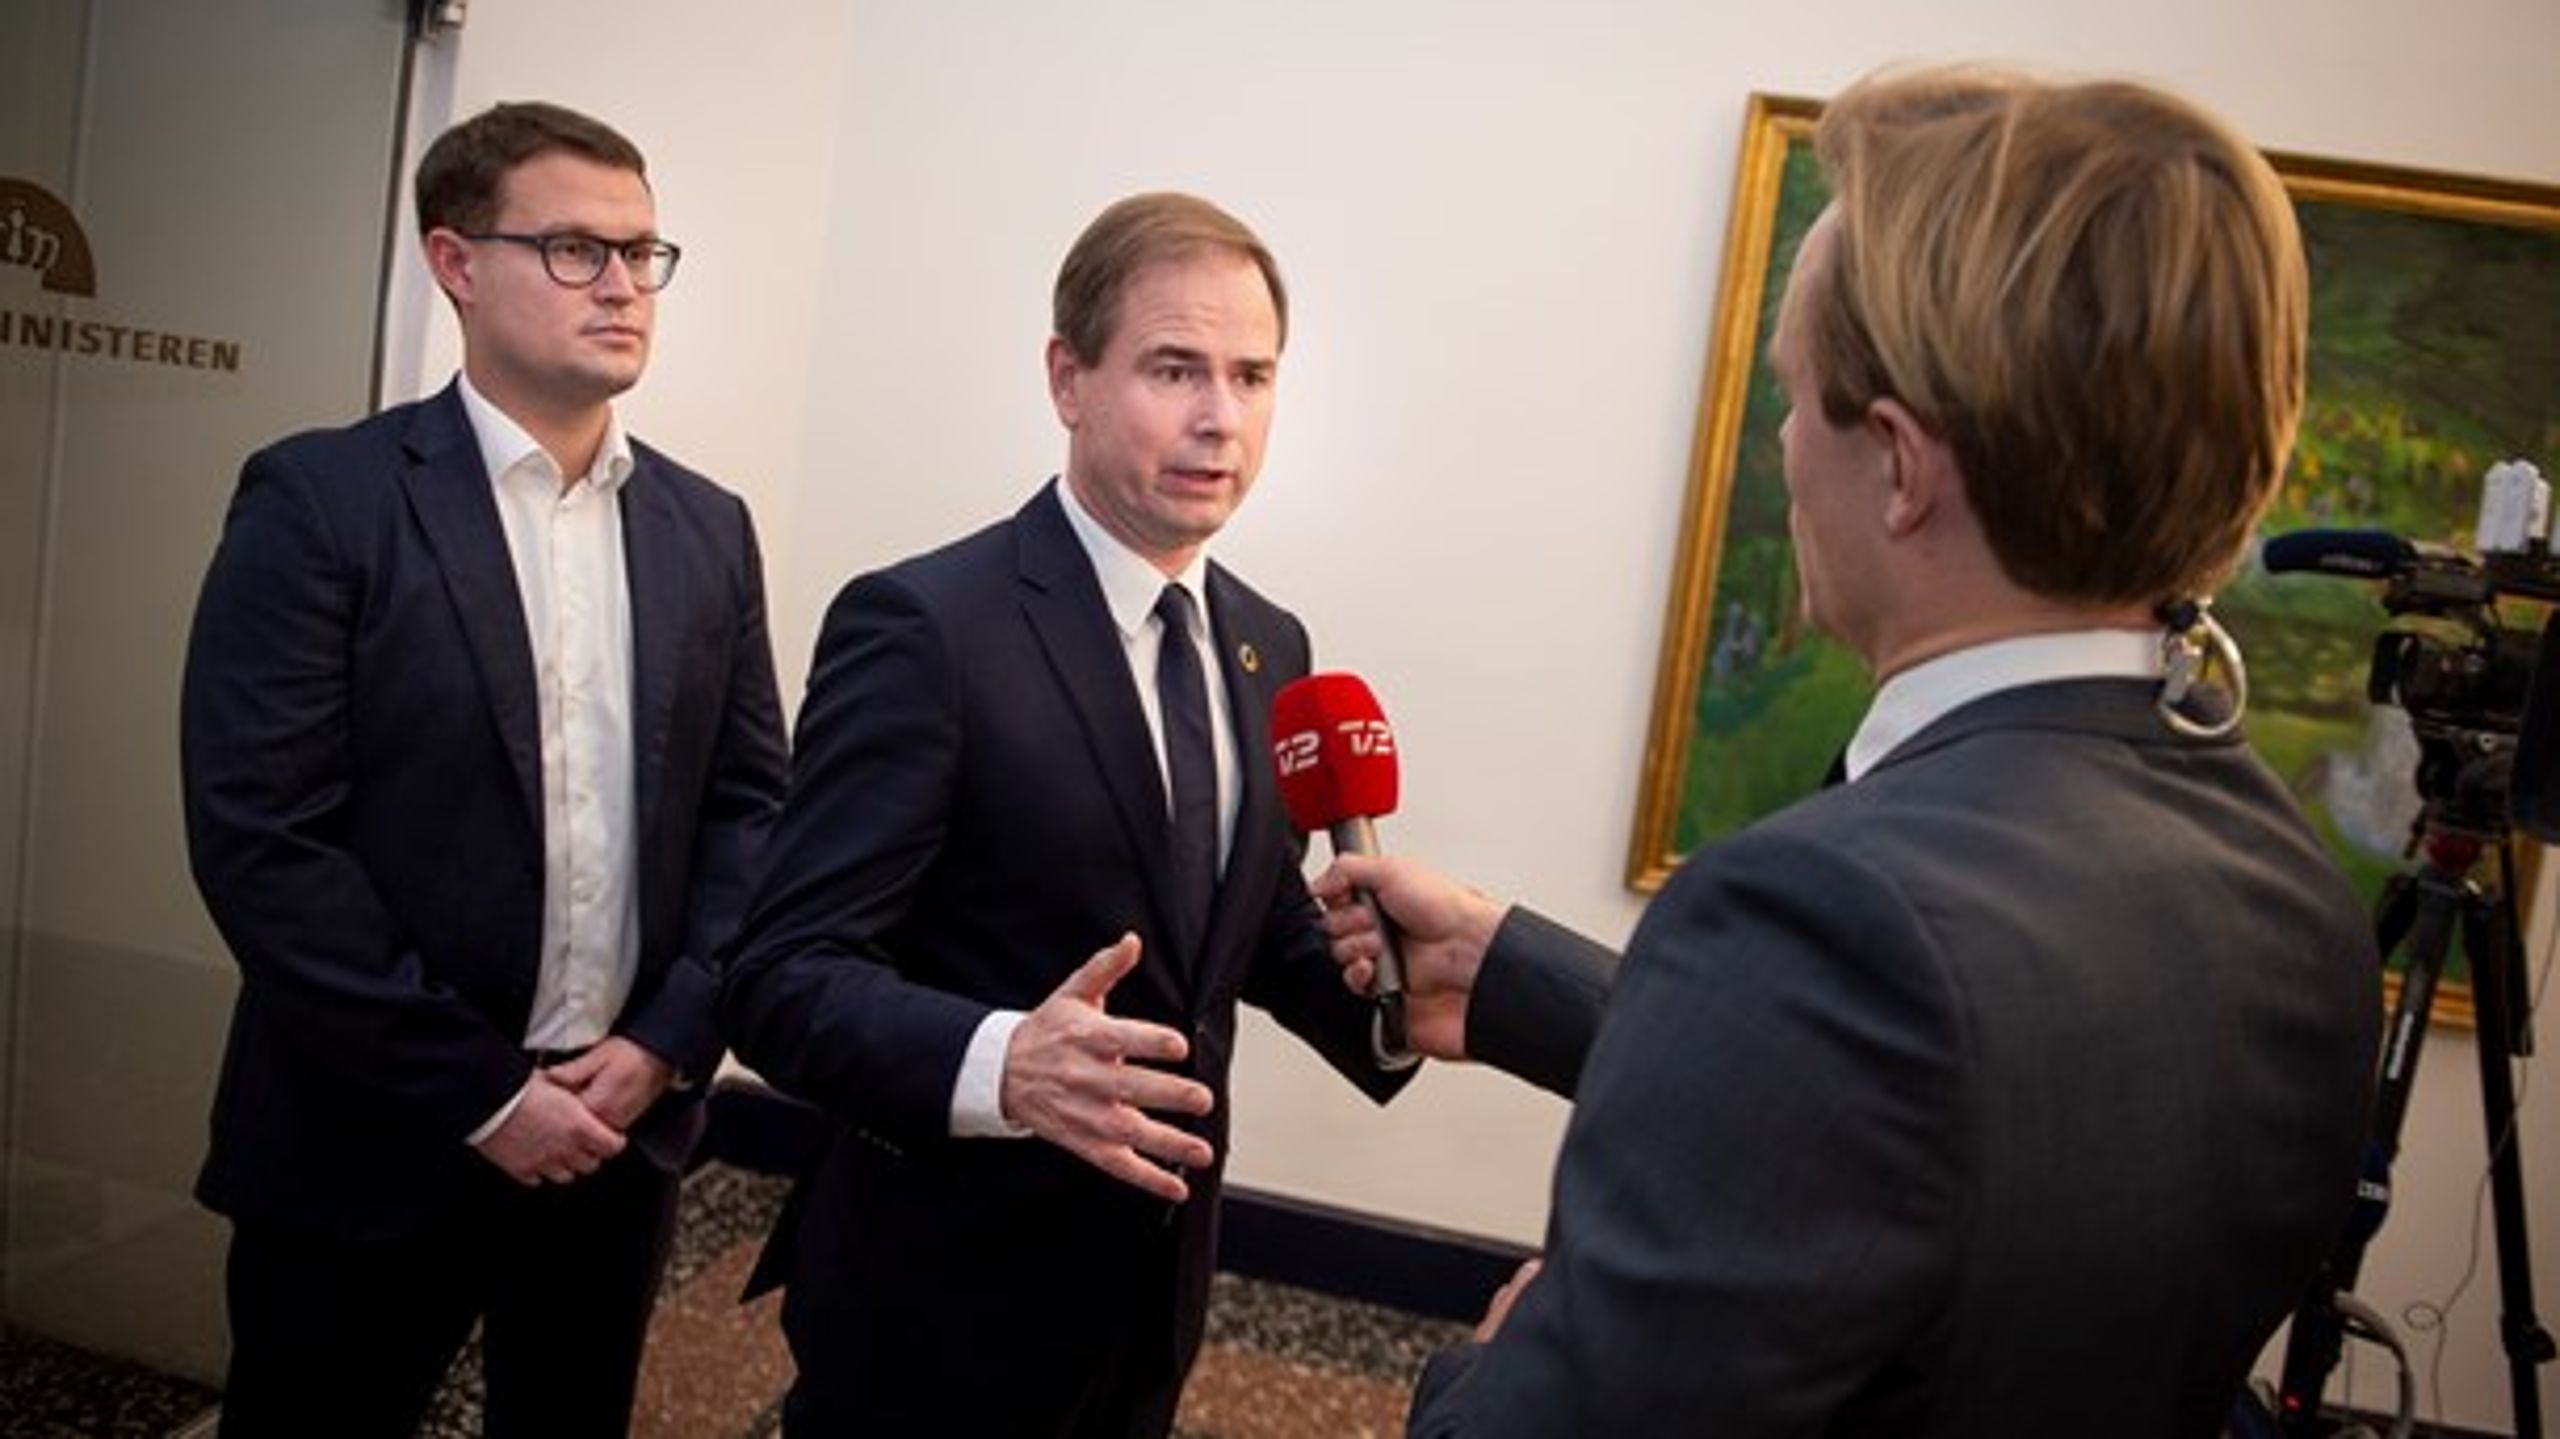 Finansminister Nicolai Wammen (S) giver interview i forbindelse med finanslovforhandlingerne mandag.